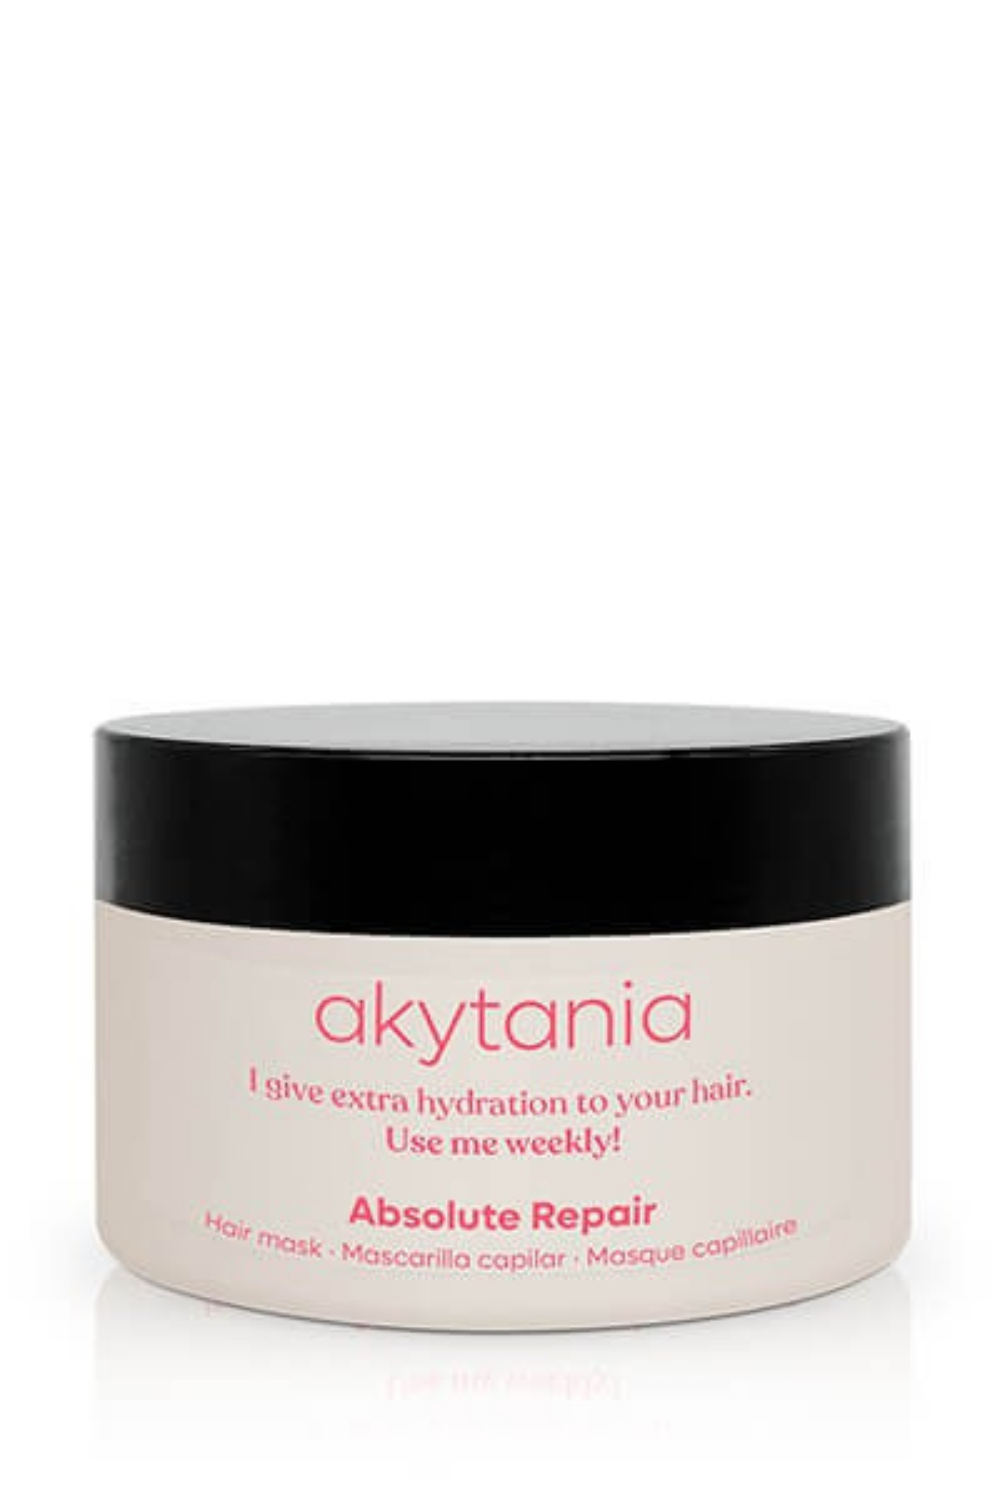 Mejores mascarillas para pelo: Absolute Repair de Akytania